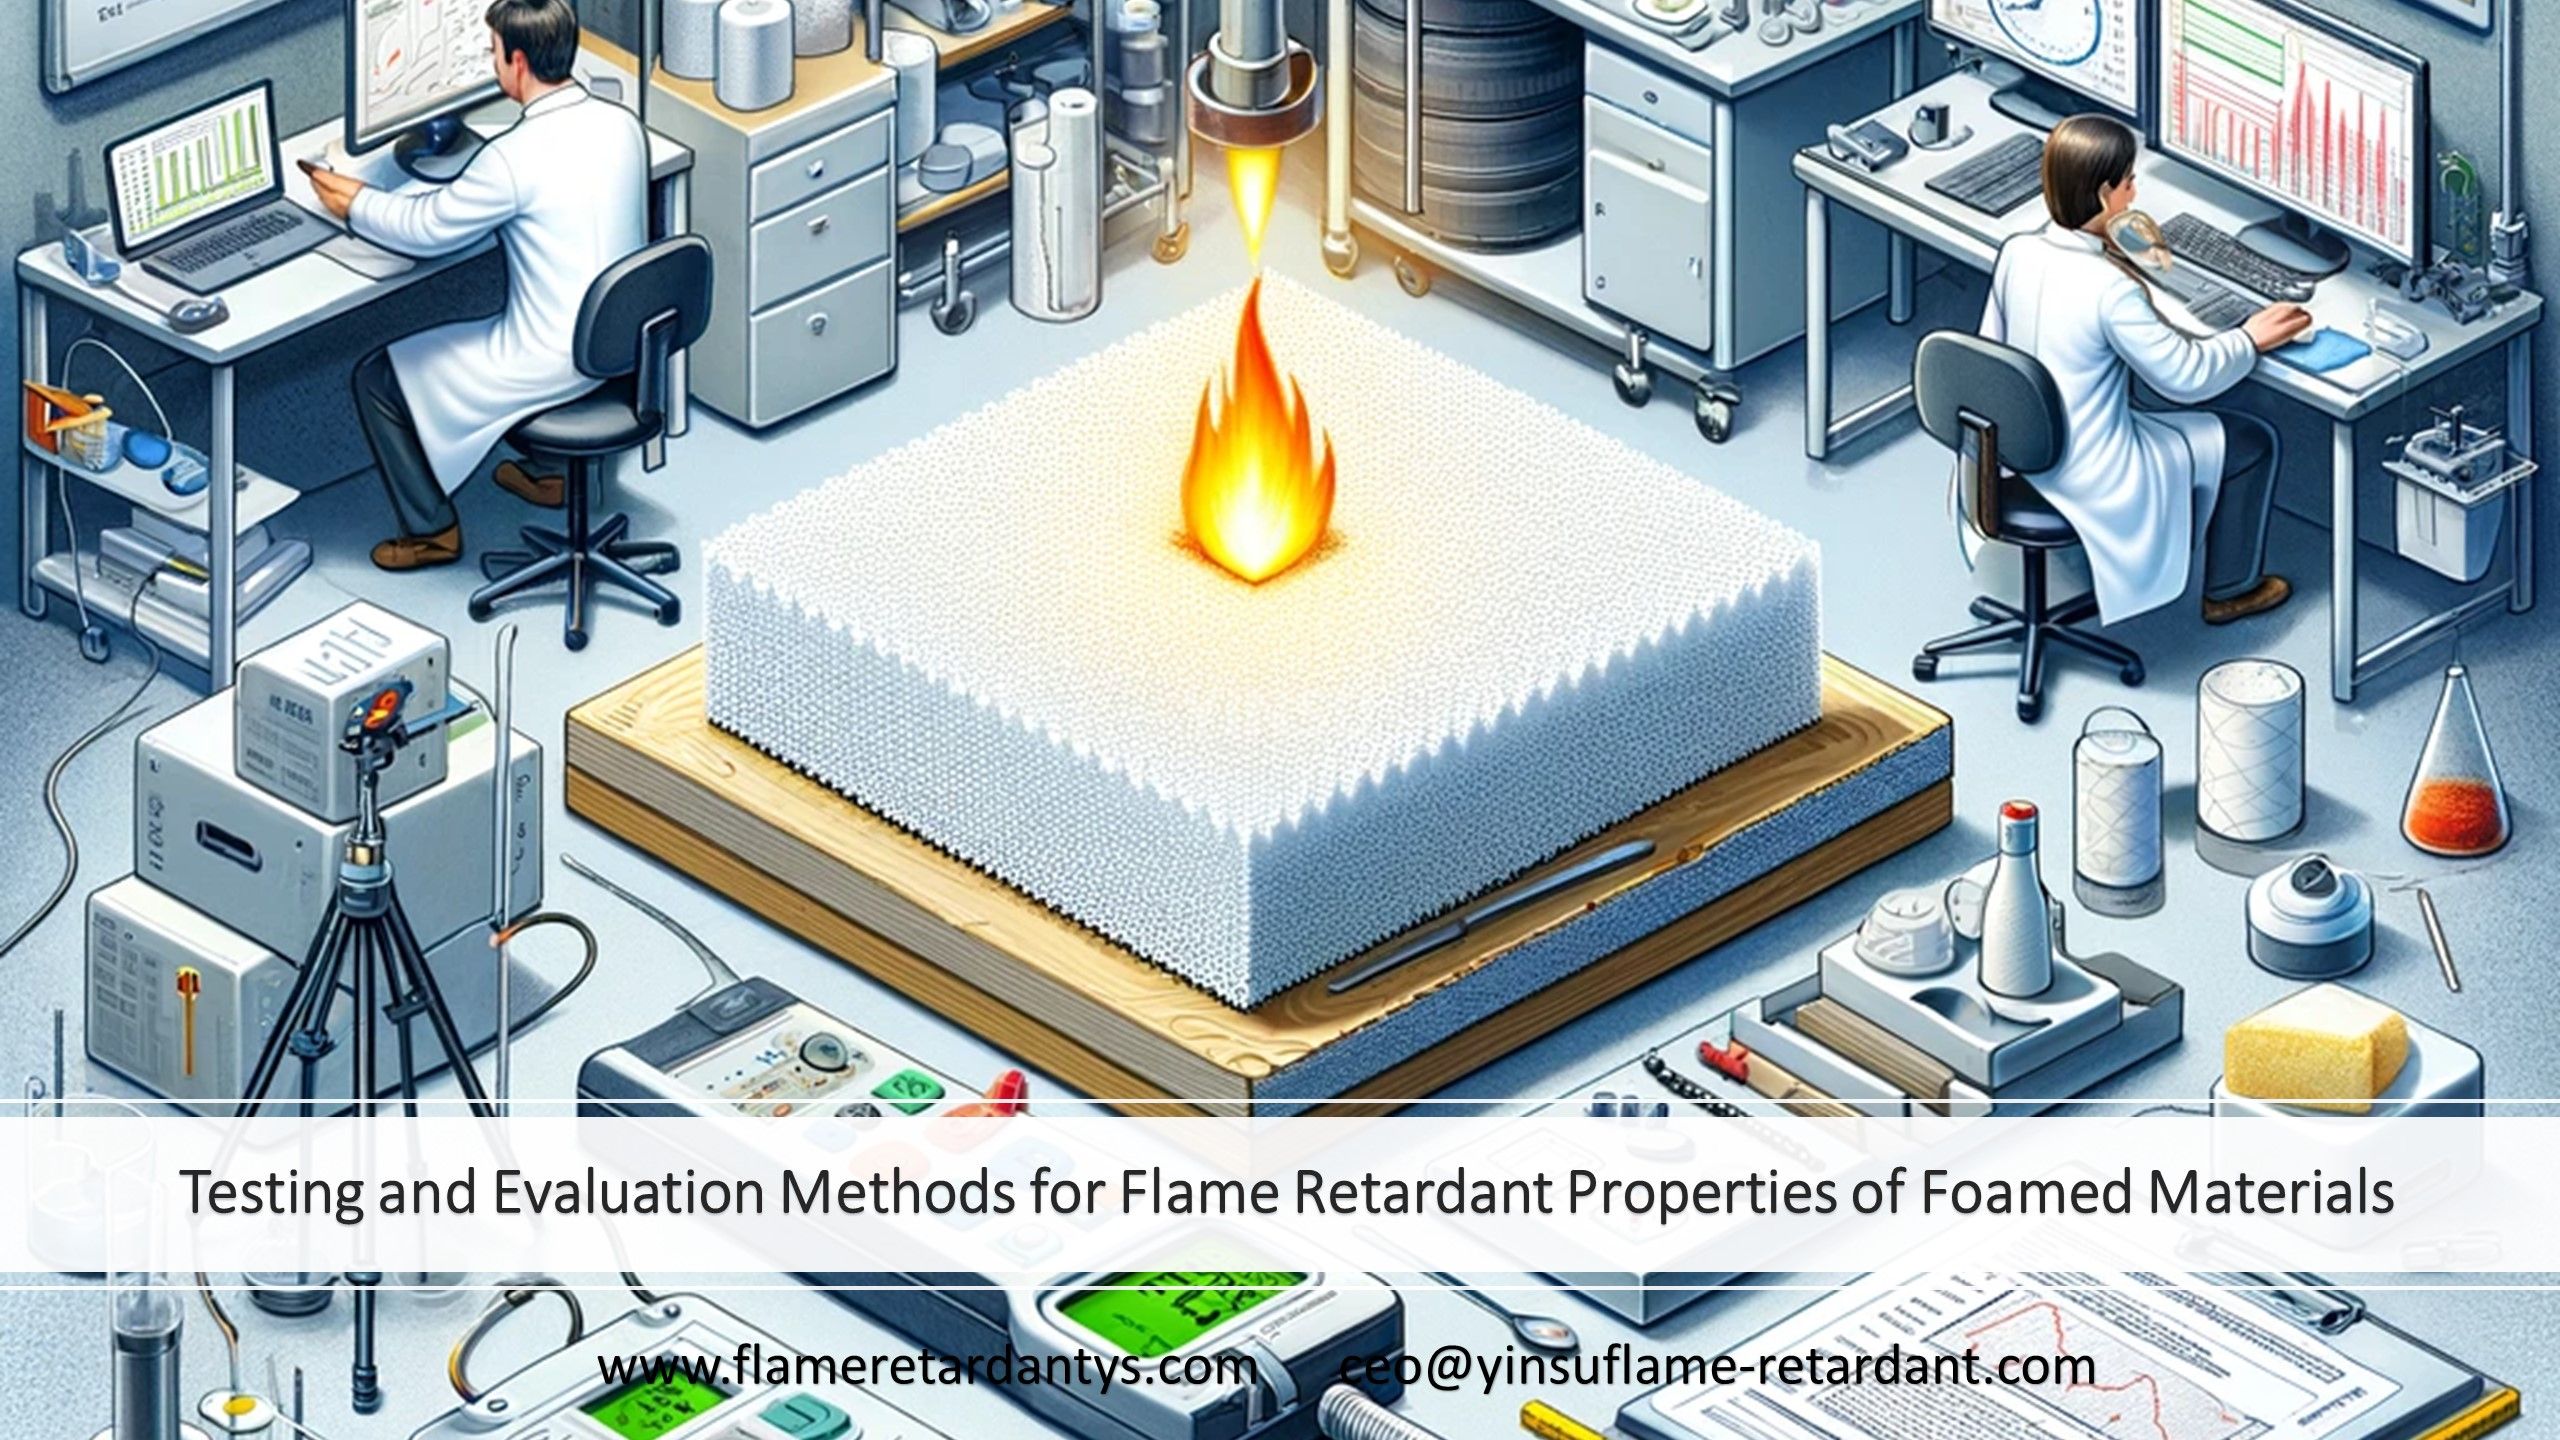 3.4 Métodos de prueba y evaluación de las propiedades retardantes de llama de materiales espumados